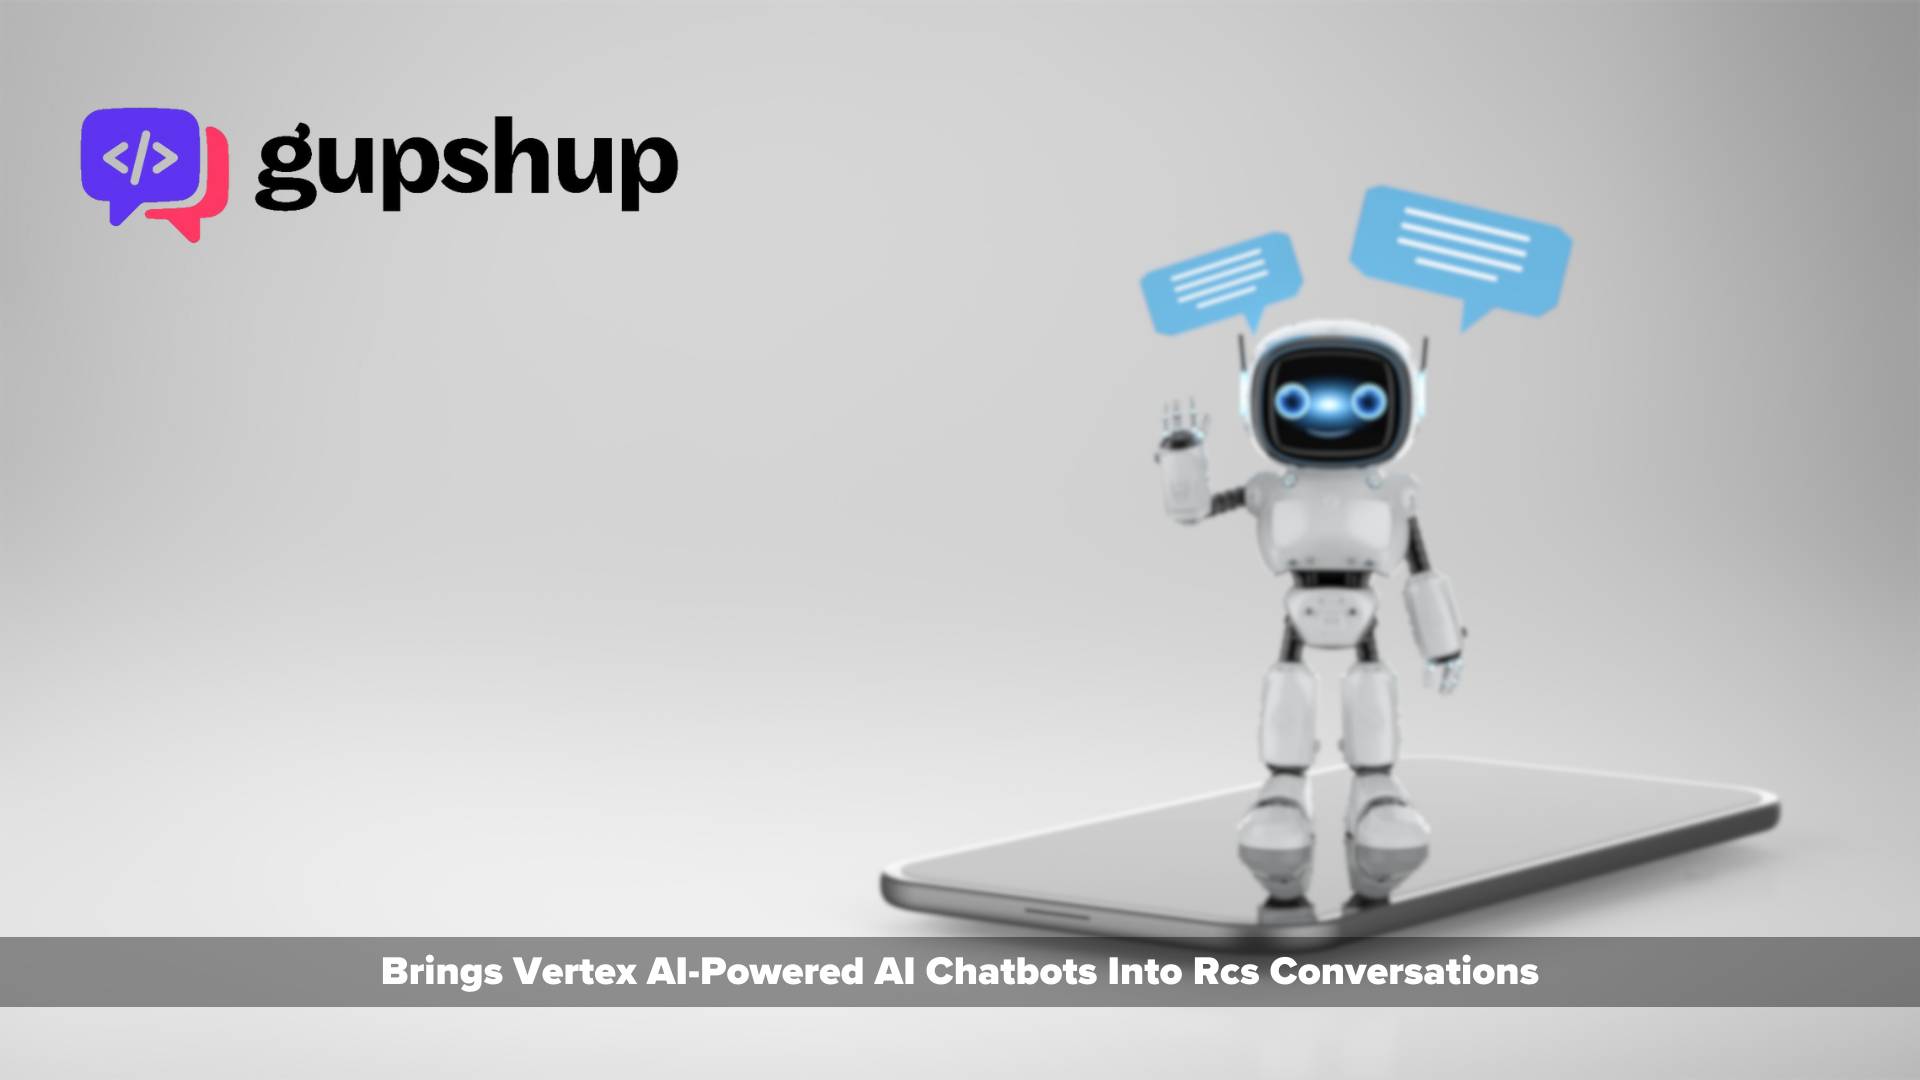 Gupshup brings Vertex AI-powered AI chatbots into RCS conversations